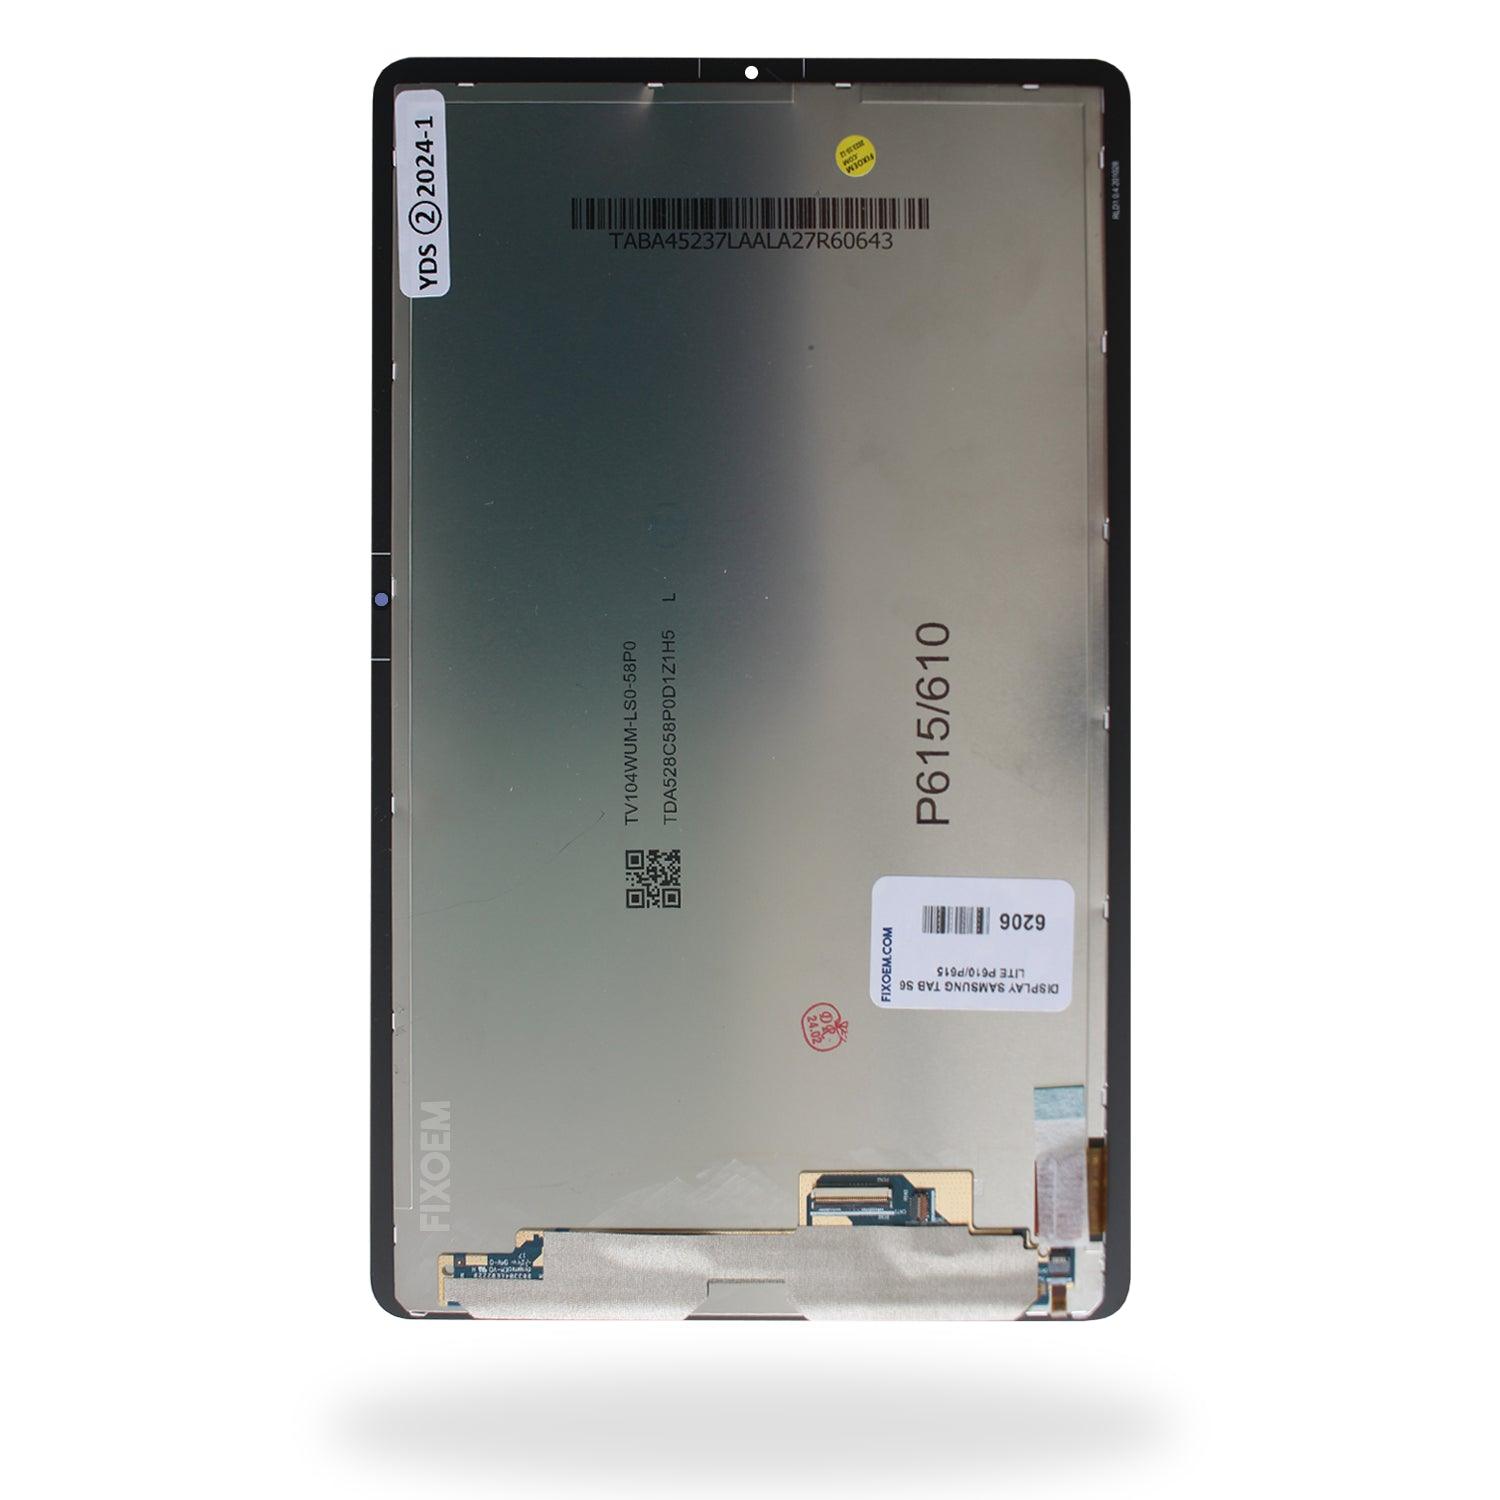 Display Samsung Tab S6 Lite P610 / P615 / P613 a solo $ 690.00 Refaccion y puestos celulares, refurbish y microelectronica.- FixOEM